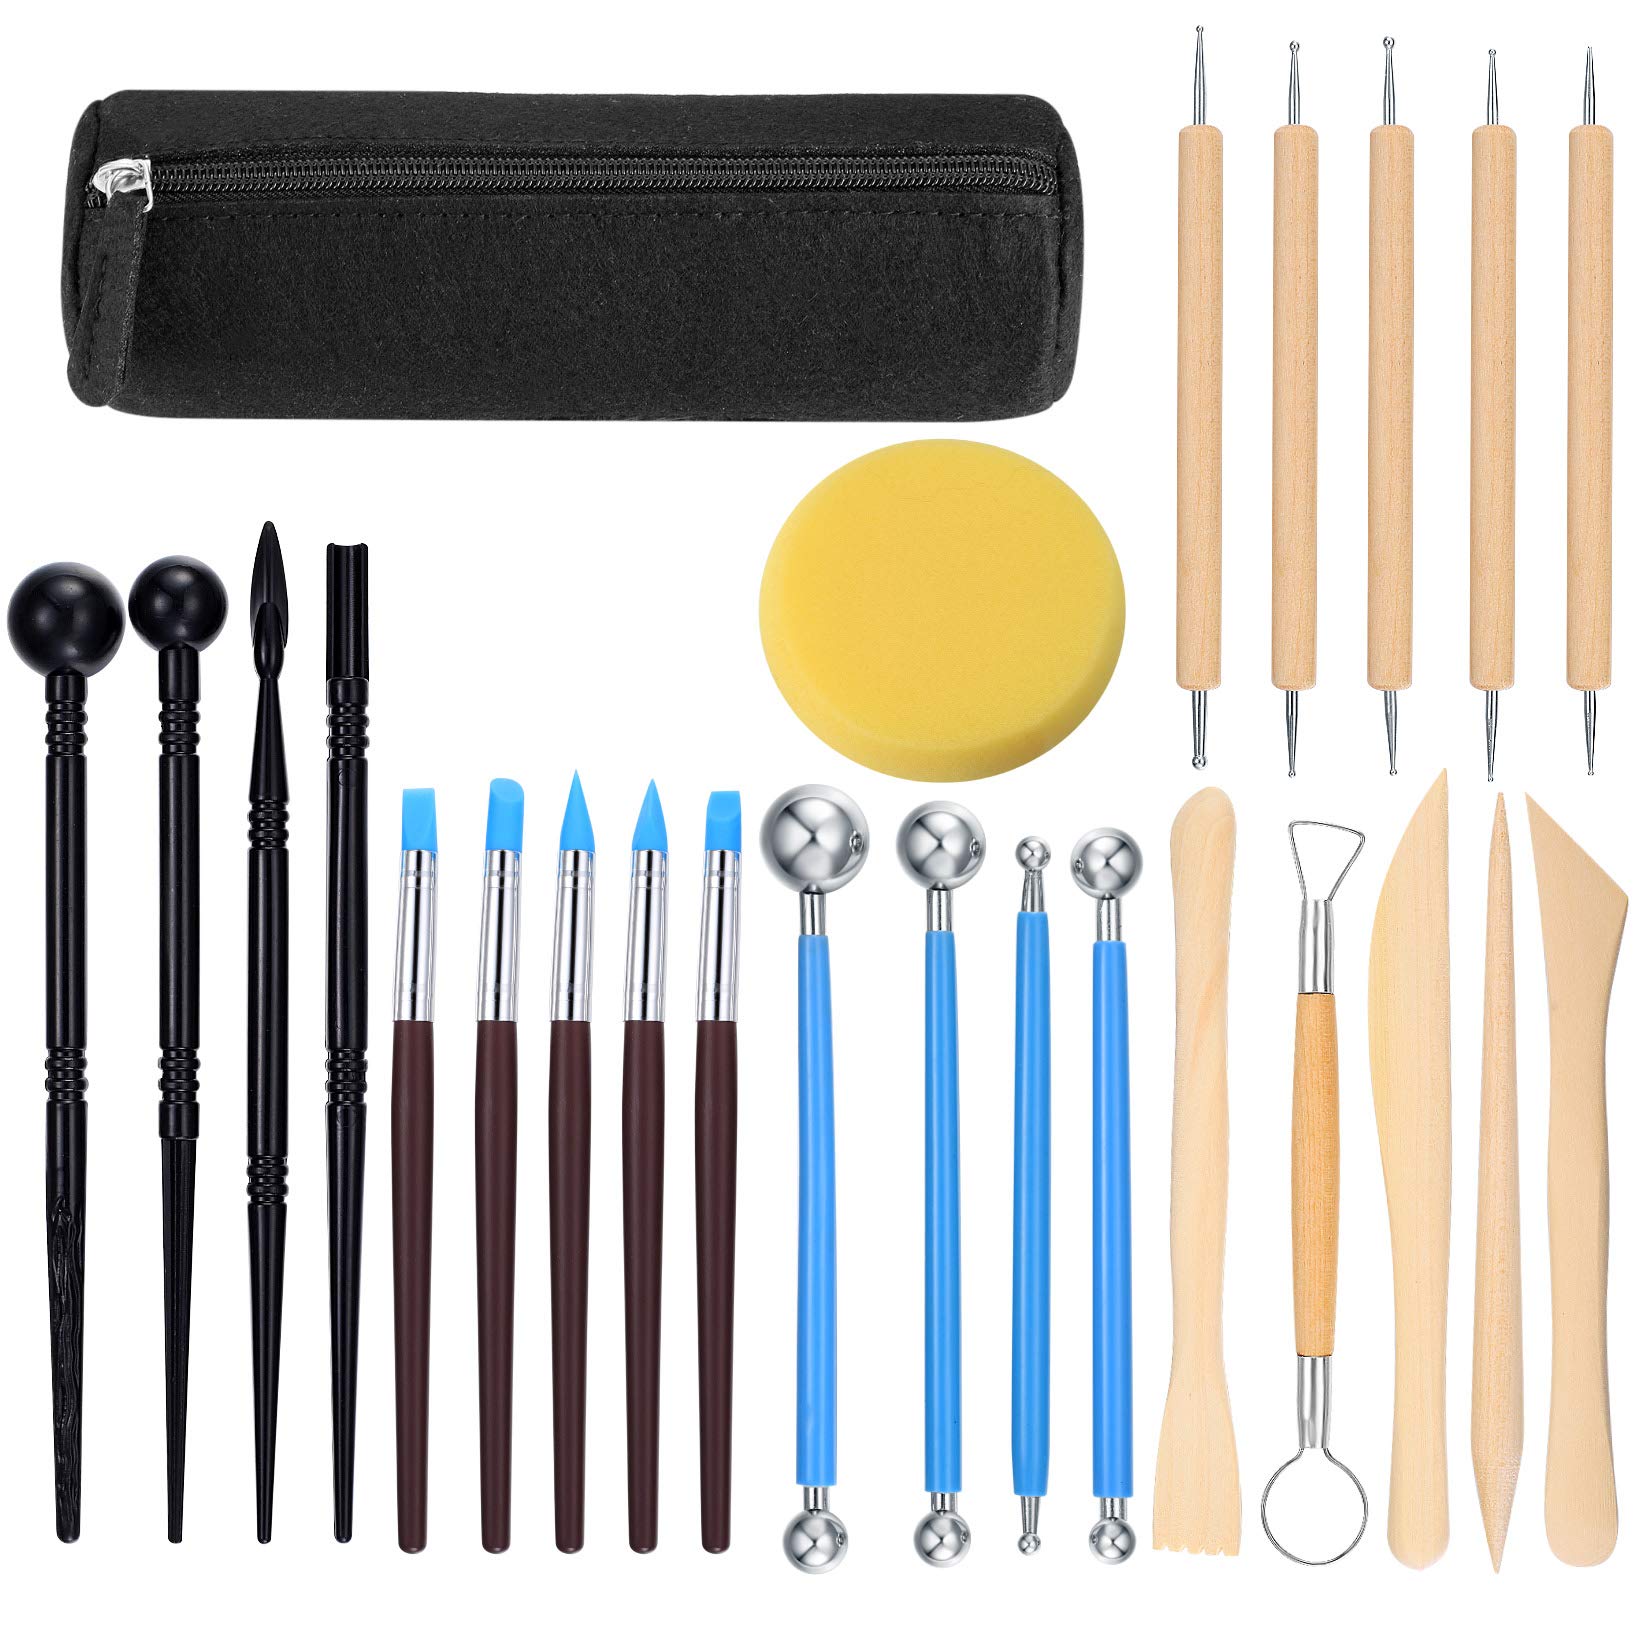 Polymer-Ton-Werkzeuge, 25-teiliges Modellierwerkzeug-Set, Kugelstift, Punktierwerkzeug, Modelliermasse, Keramikwerkzeuge, Prägen, Formen